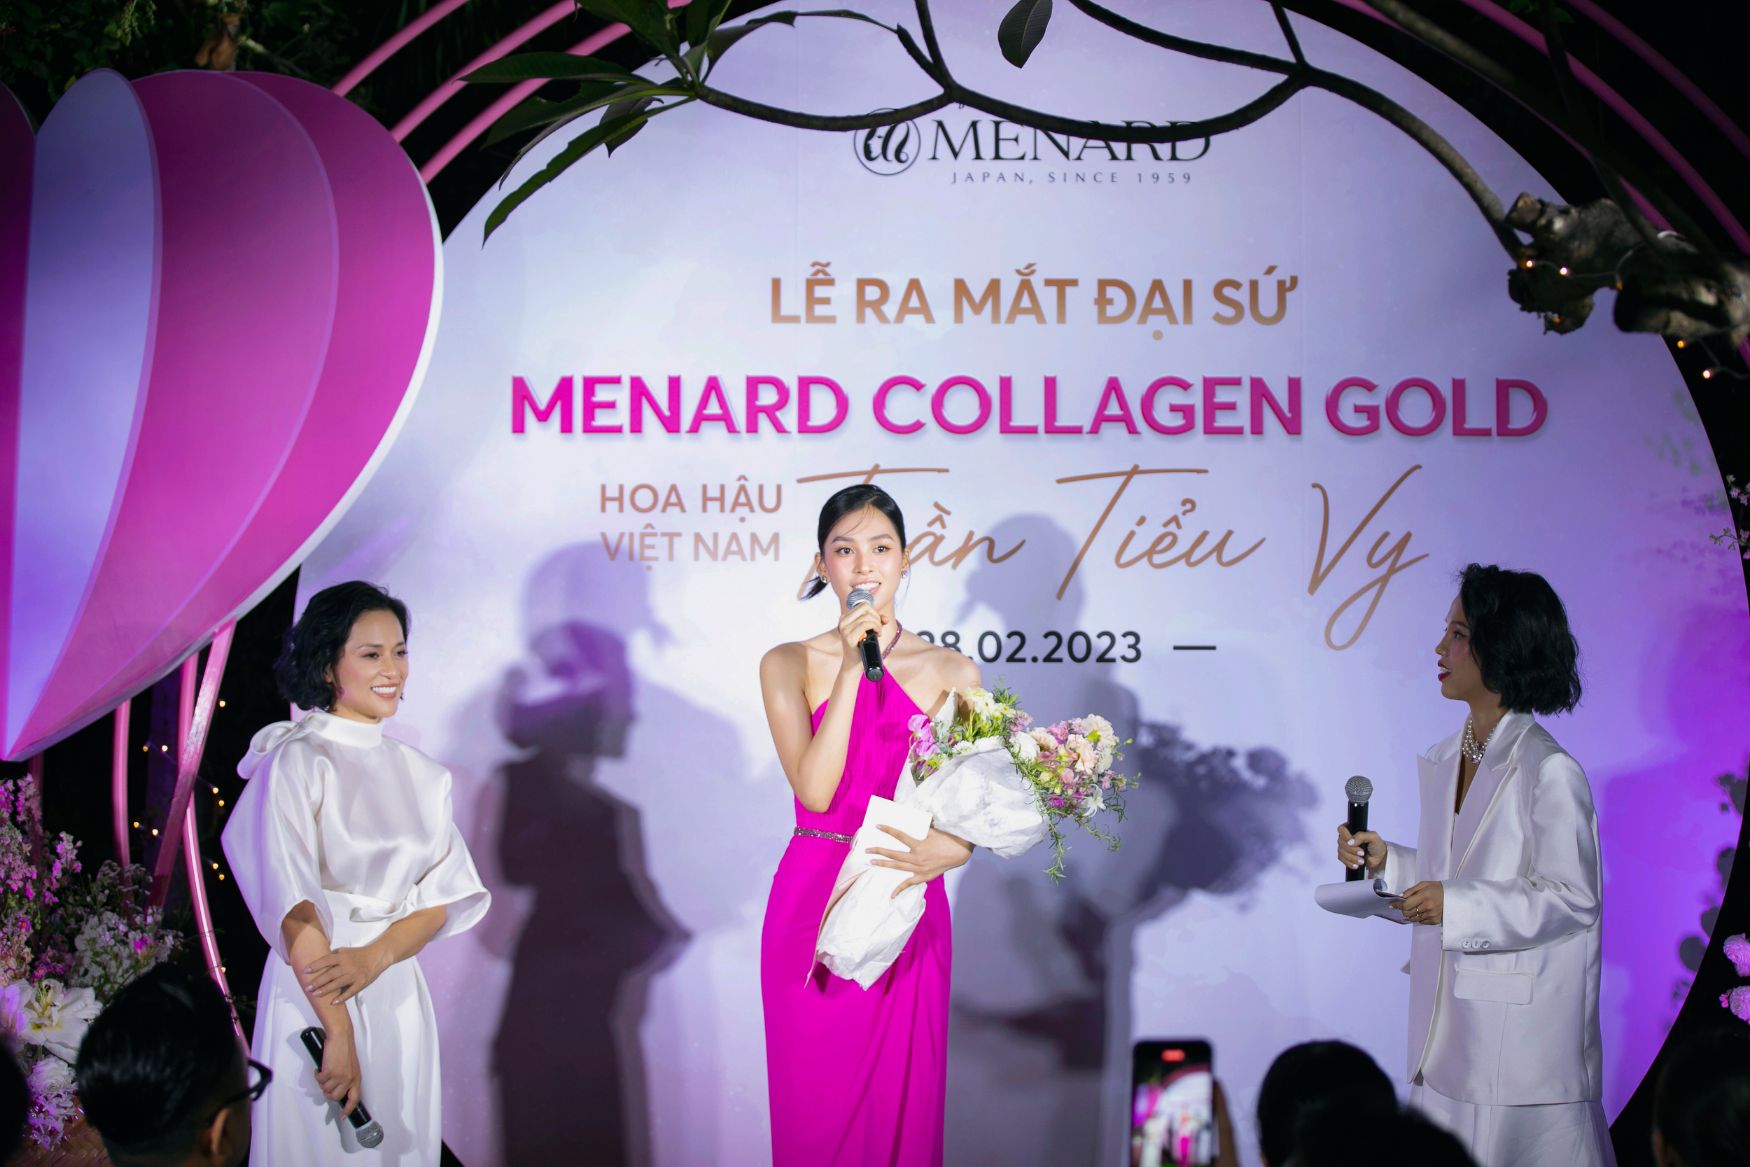 tiểu vy menard 1 Hoa hậu Tiểu Vy trở thành Đại sứ của sản phẩm cao cấp Menard Collagen Gold